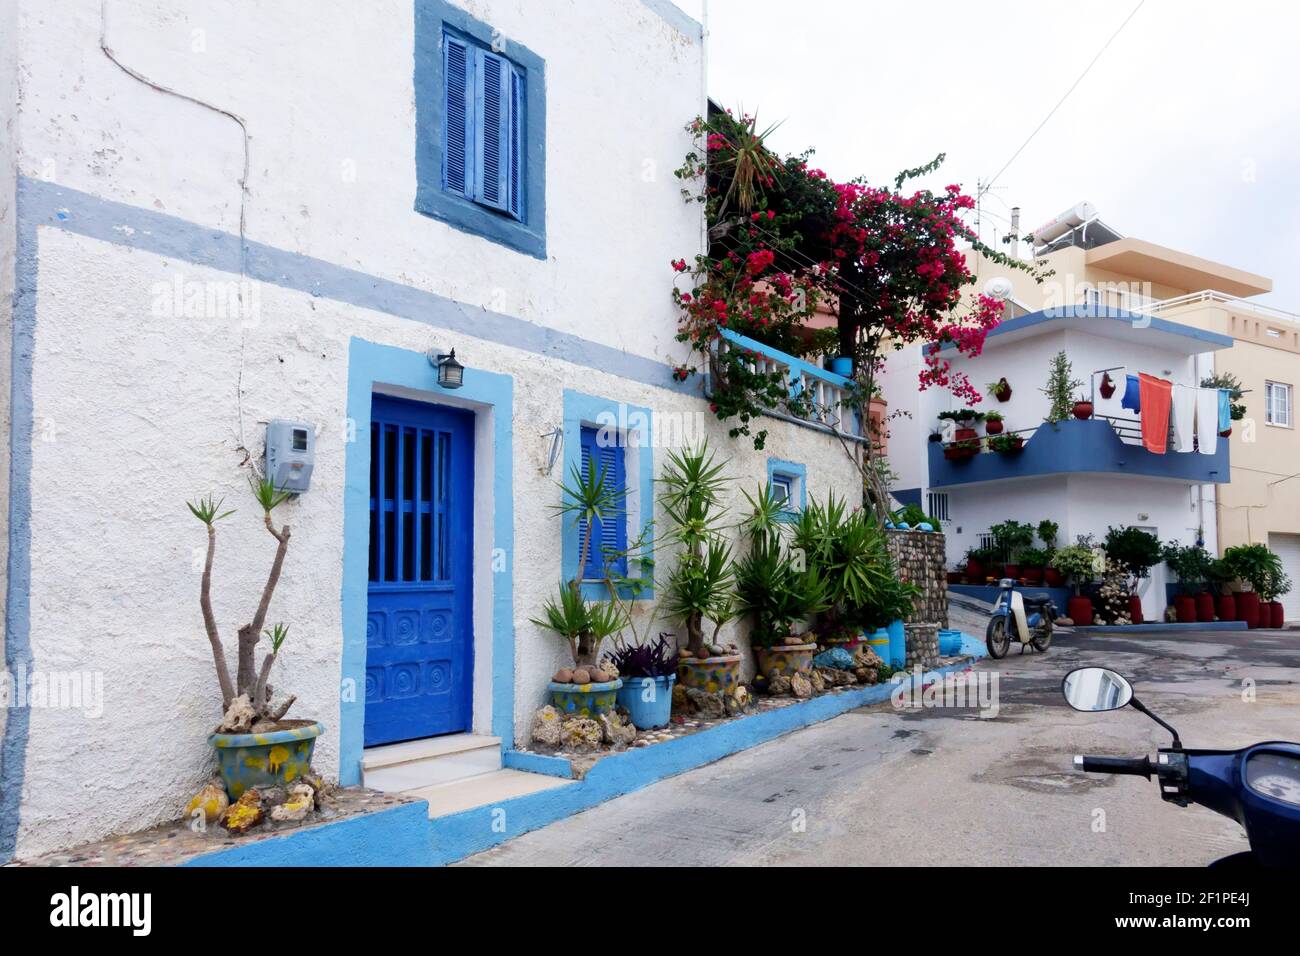 Rue charmante typique avec maisons peintes en bleu et blanc La vieille ville de Kefalos sur l'île grecque de Kos Banque D'Images